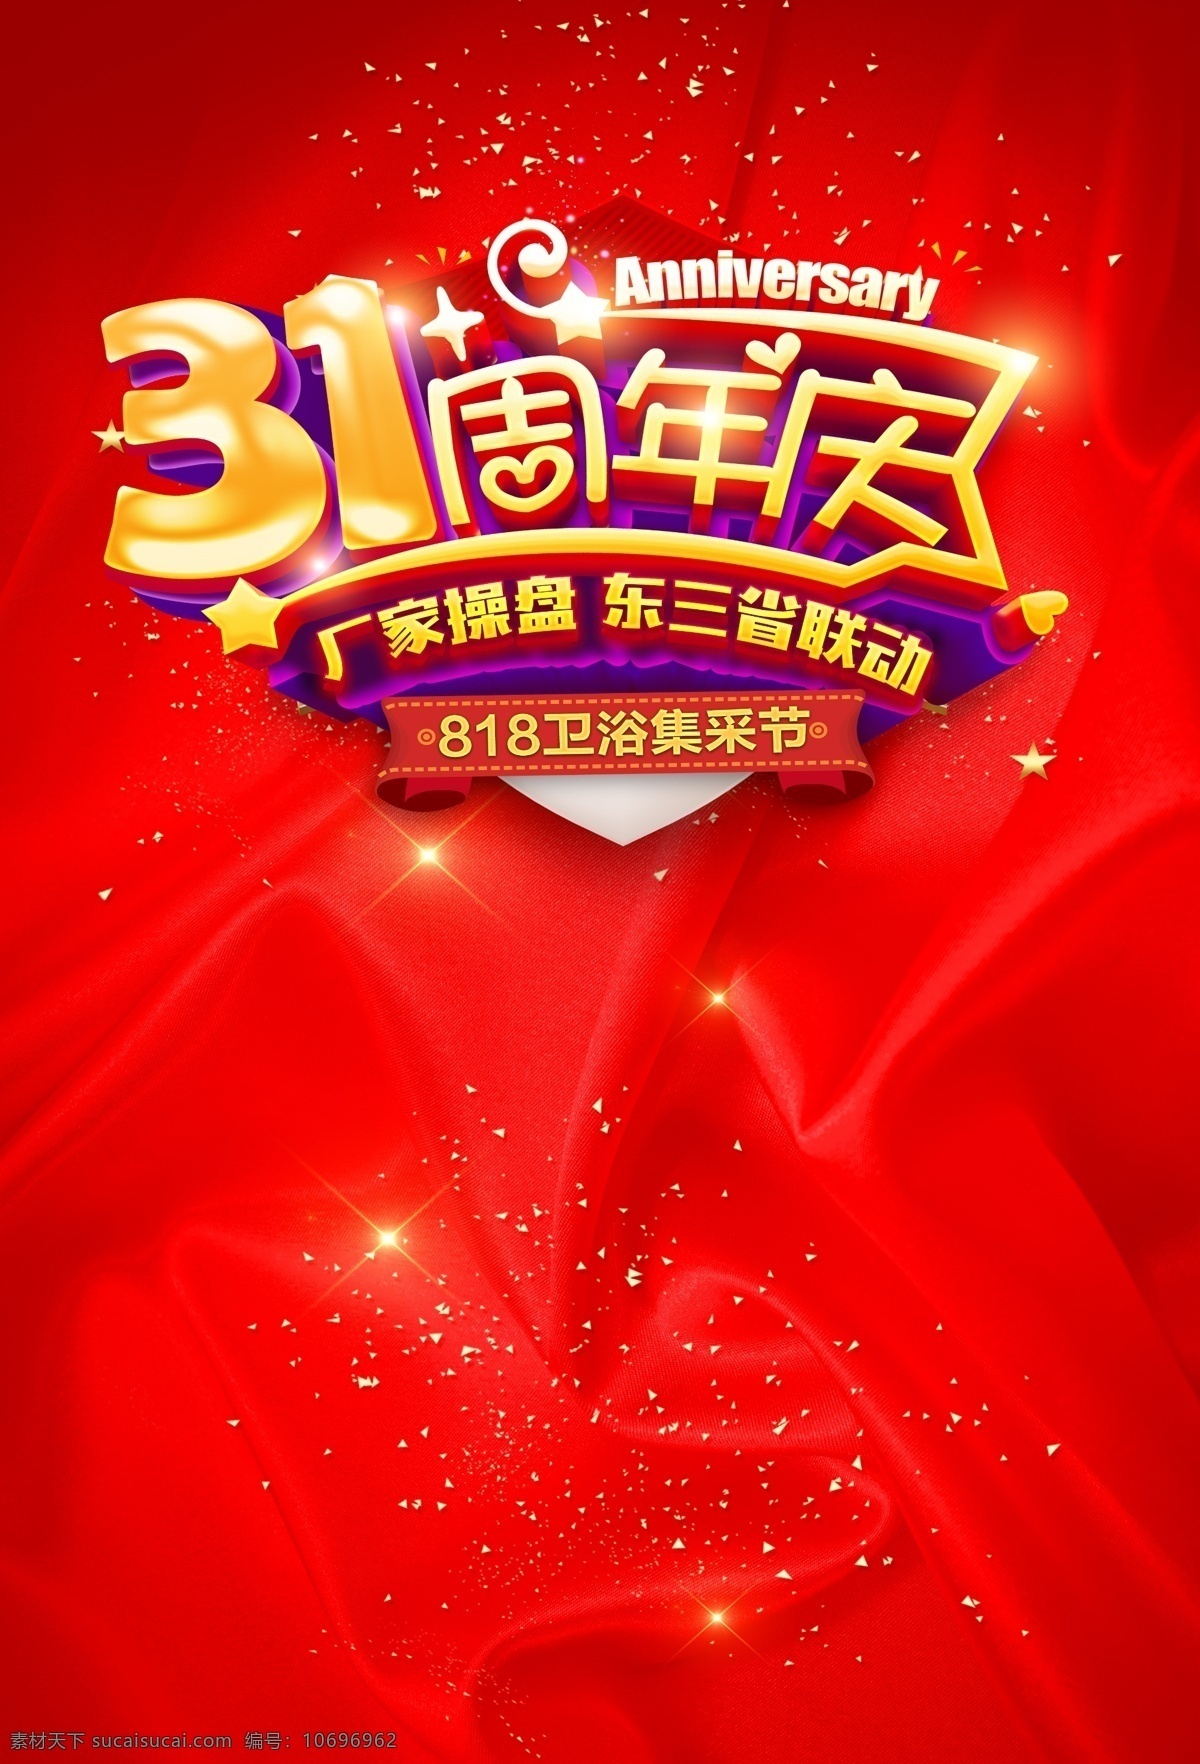 31周年庆 31 周年庆 红色背景 厂家直销 促销